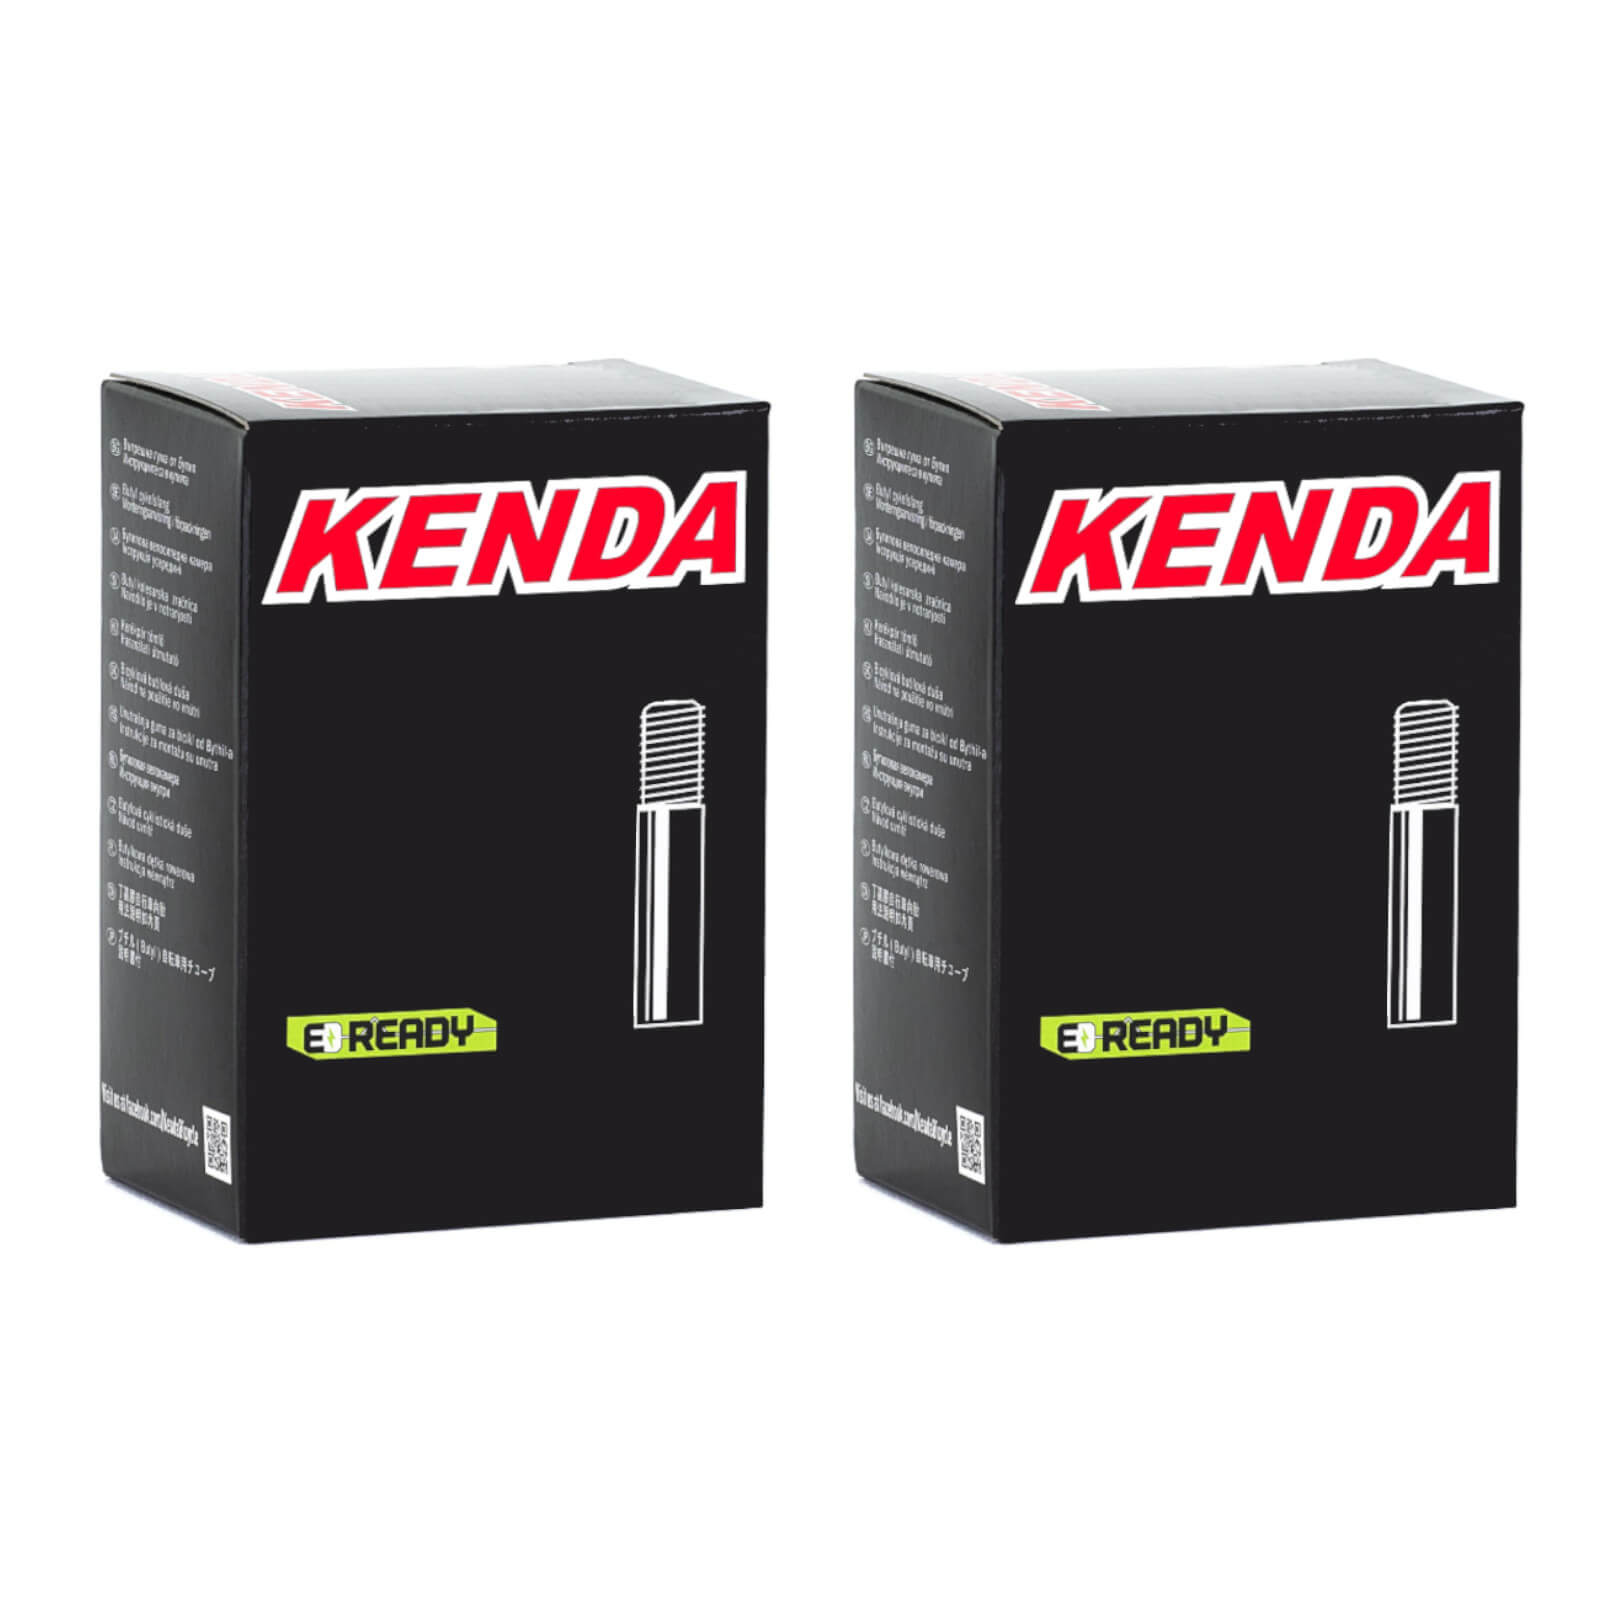 Kenda 20x1.0-1.5" 20 Inch Schrader Valve Bike Inner Tube Pack of 2